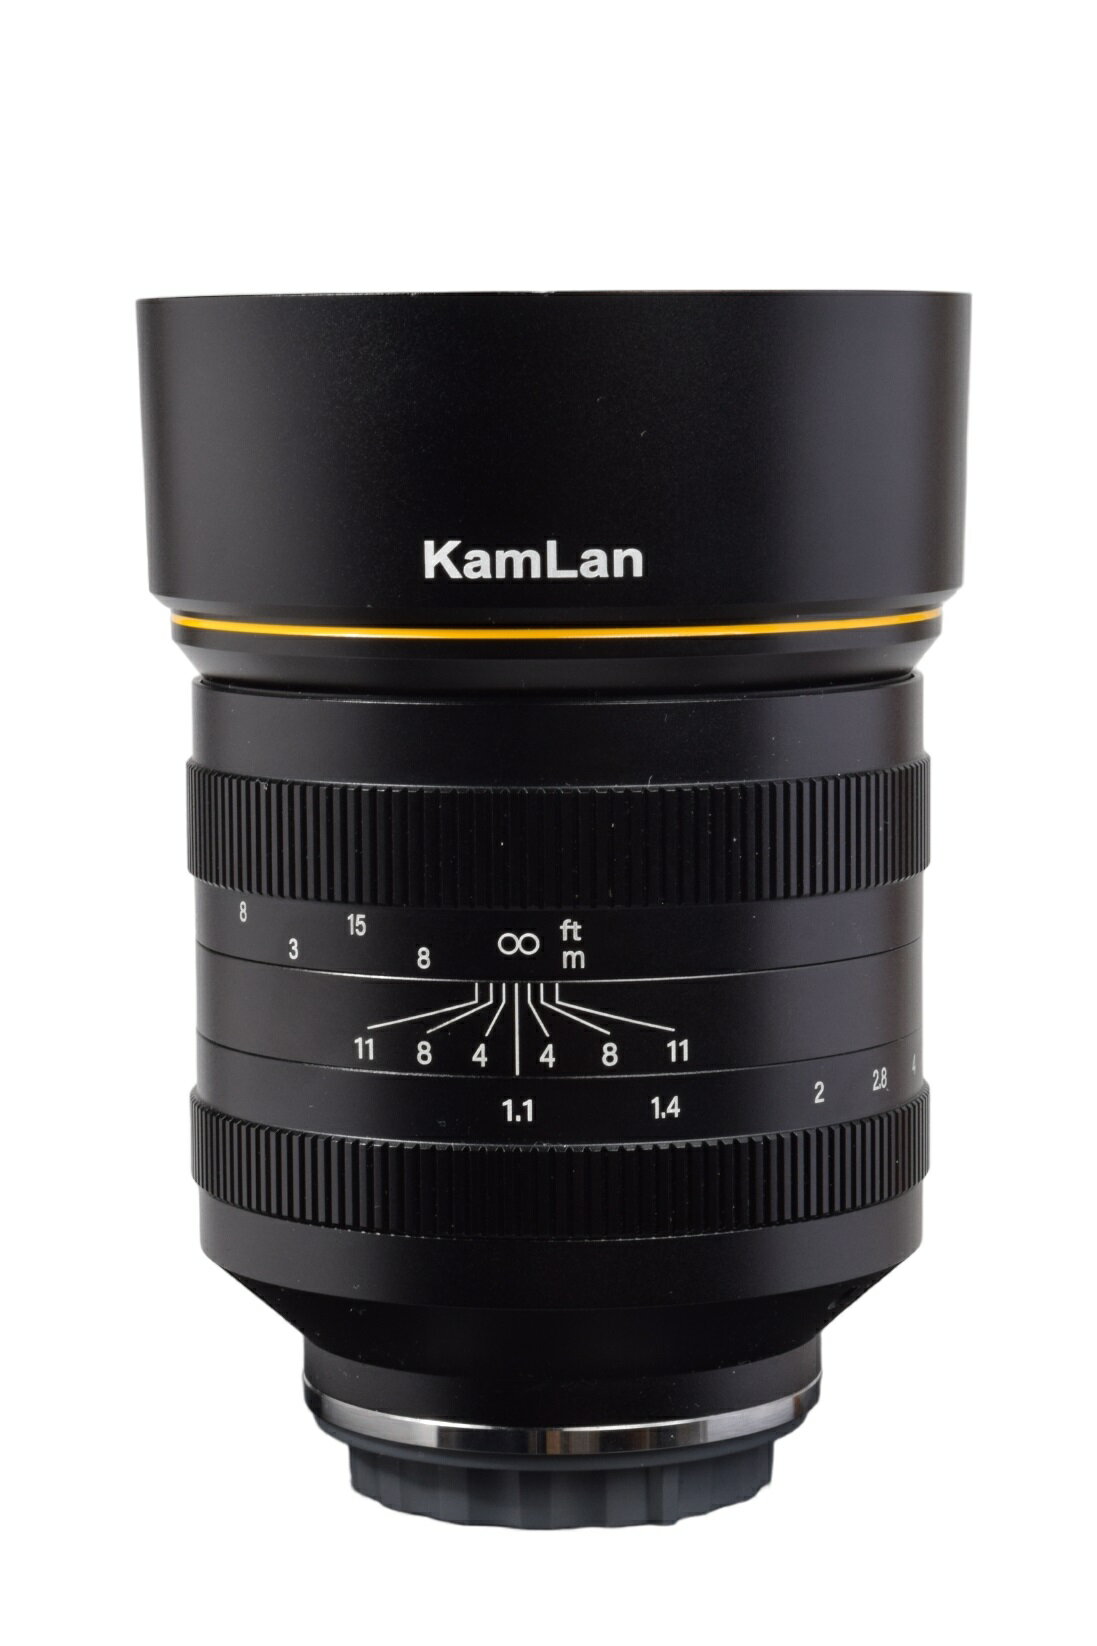 型番KAM0033 商品説明APS-C用に設計されたハイスピードレンズです。フルサイズ換算で105mmの中望遠レンズに相当する70mmという焦点距離は、ポートレートをはじめとする様々な用途にご使用いただけます。 仕様焦点距離：70mm、F値...